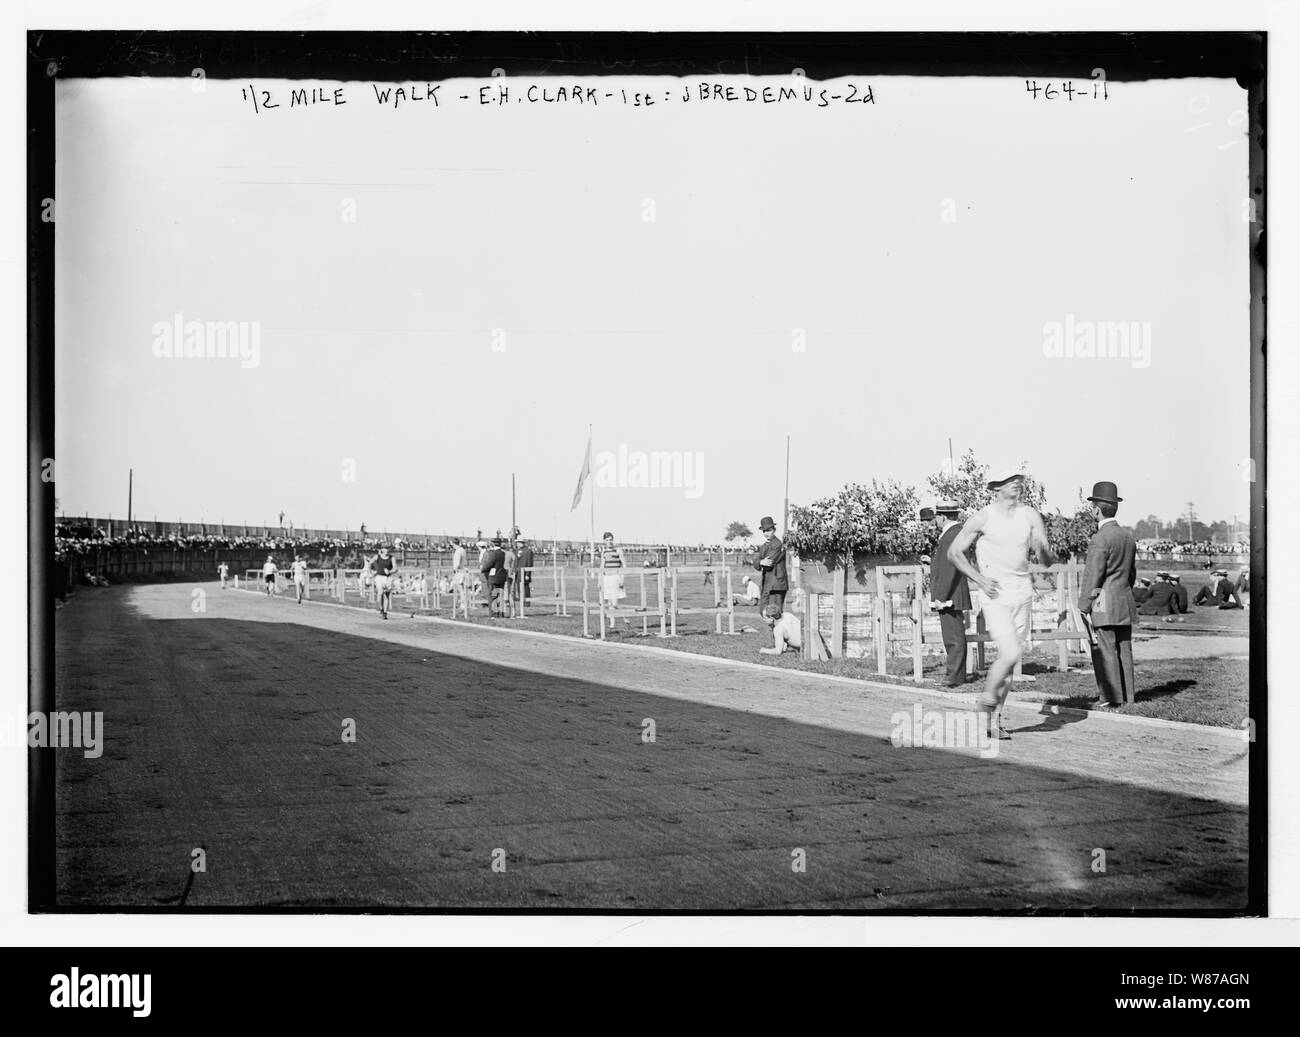 Mezzo miglio a piedi, E.H. Clark - 1st; J. Bredemus -2a, Y.M.C.A., Brooklyn Foto Stock